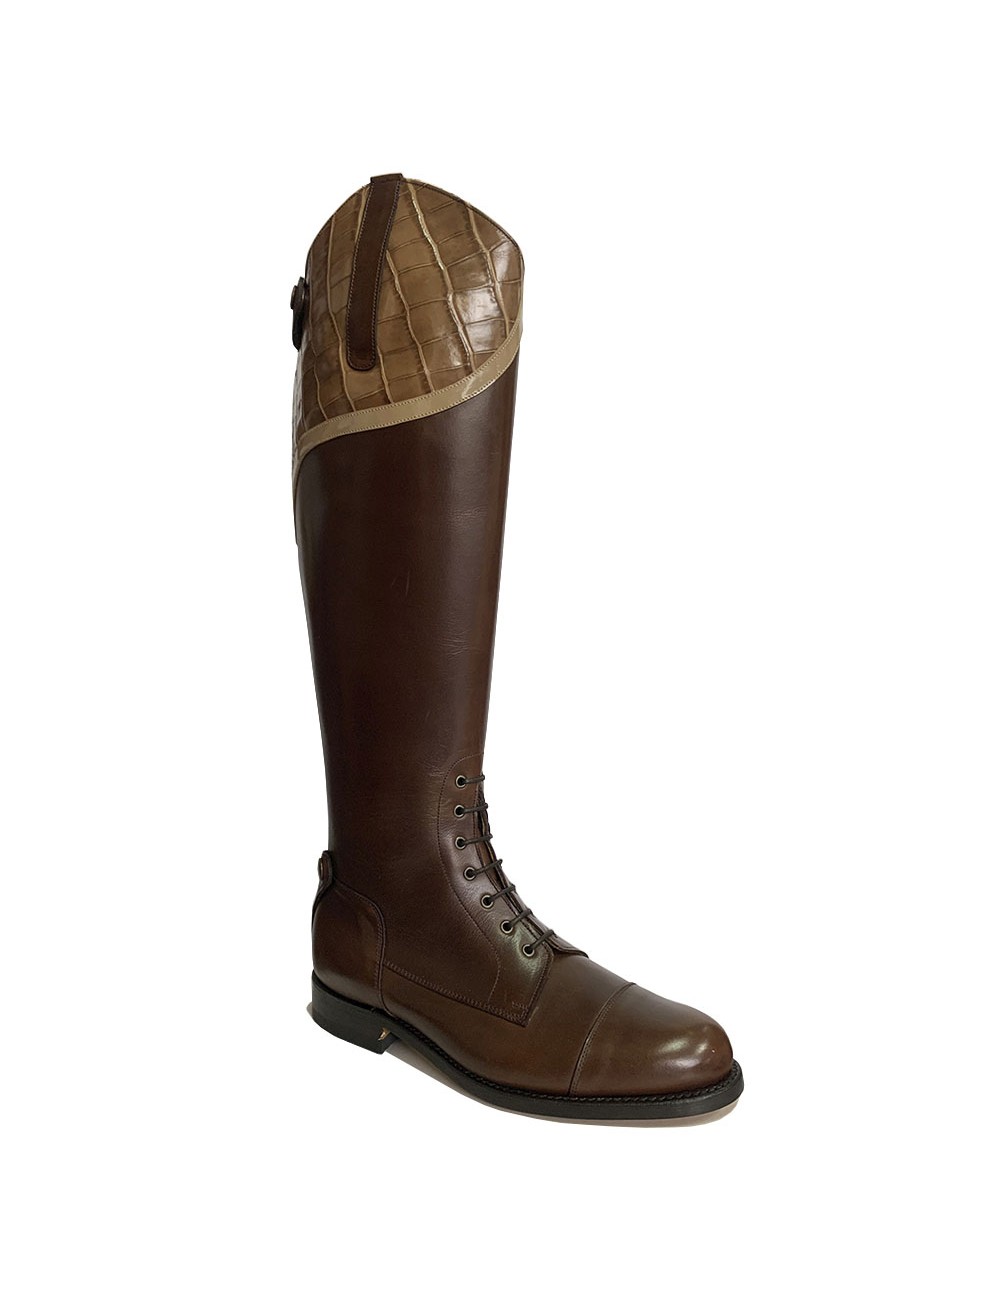 Bottes équitation marron bande croco - Accessoires pour chaussures